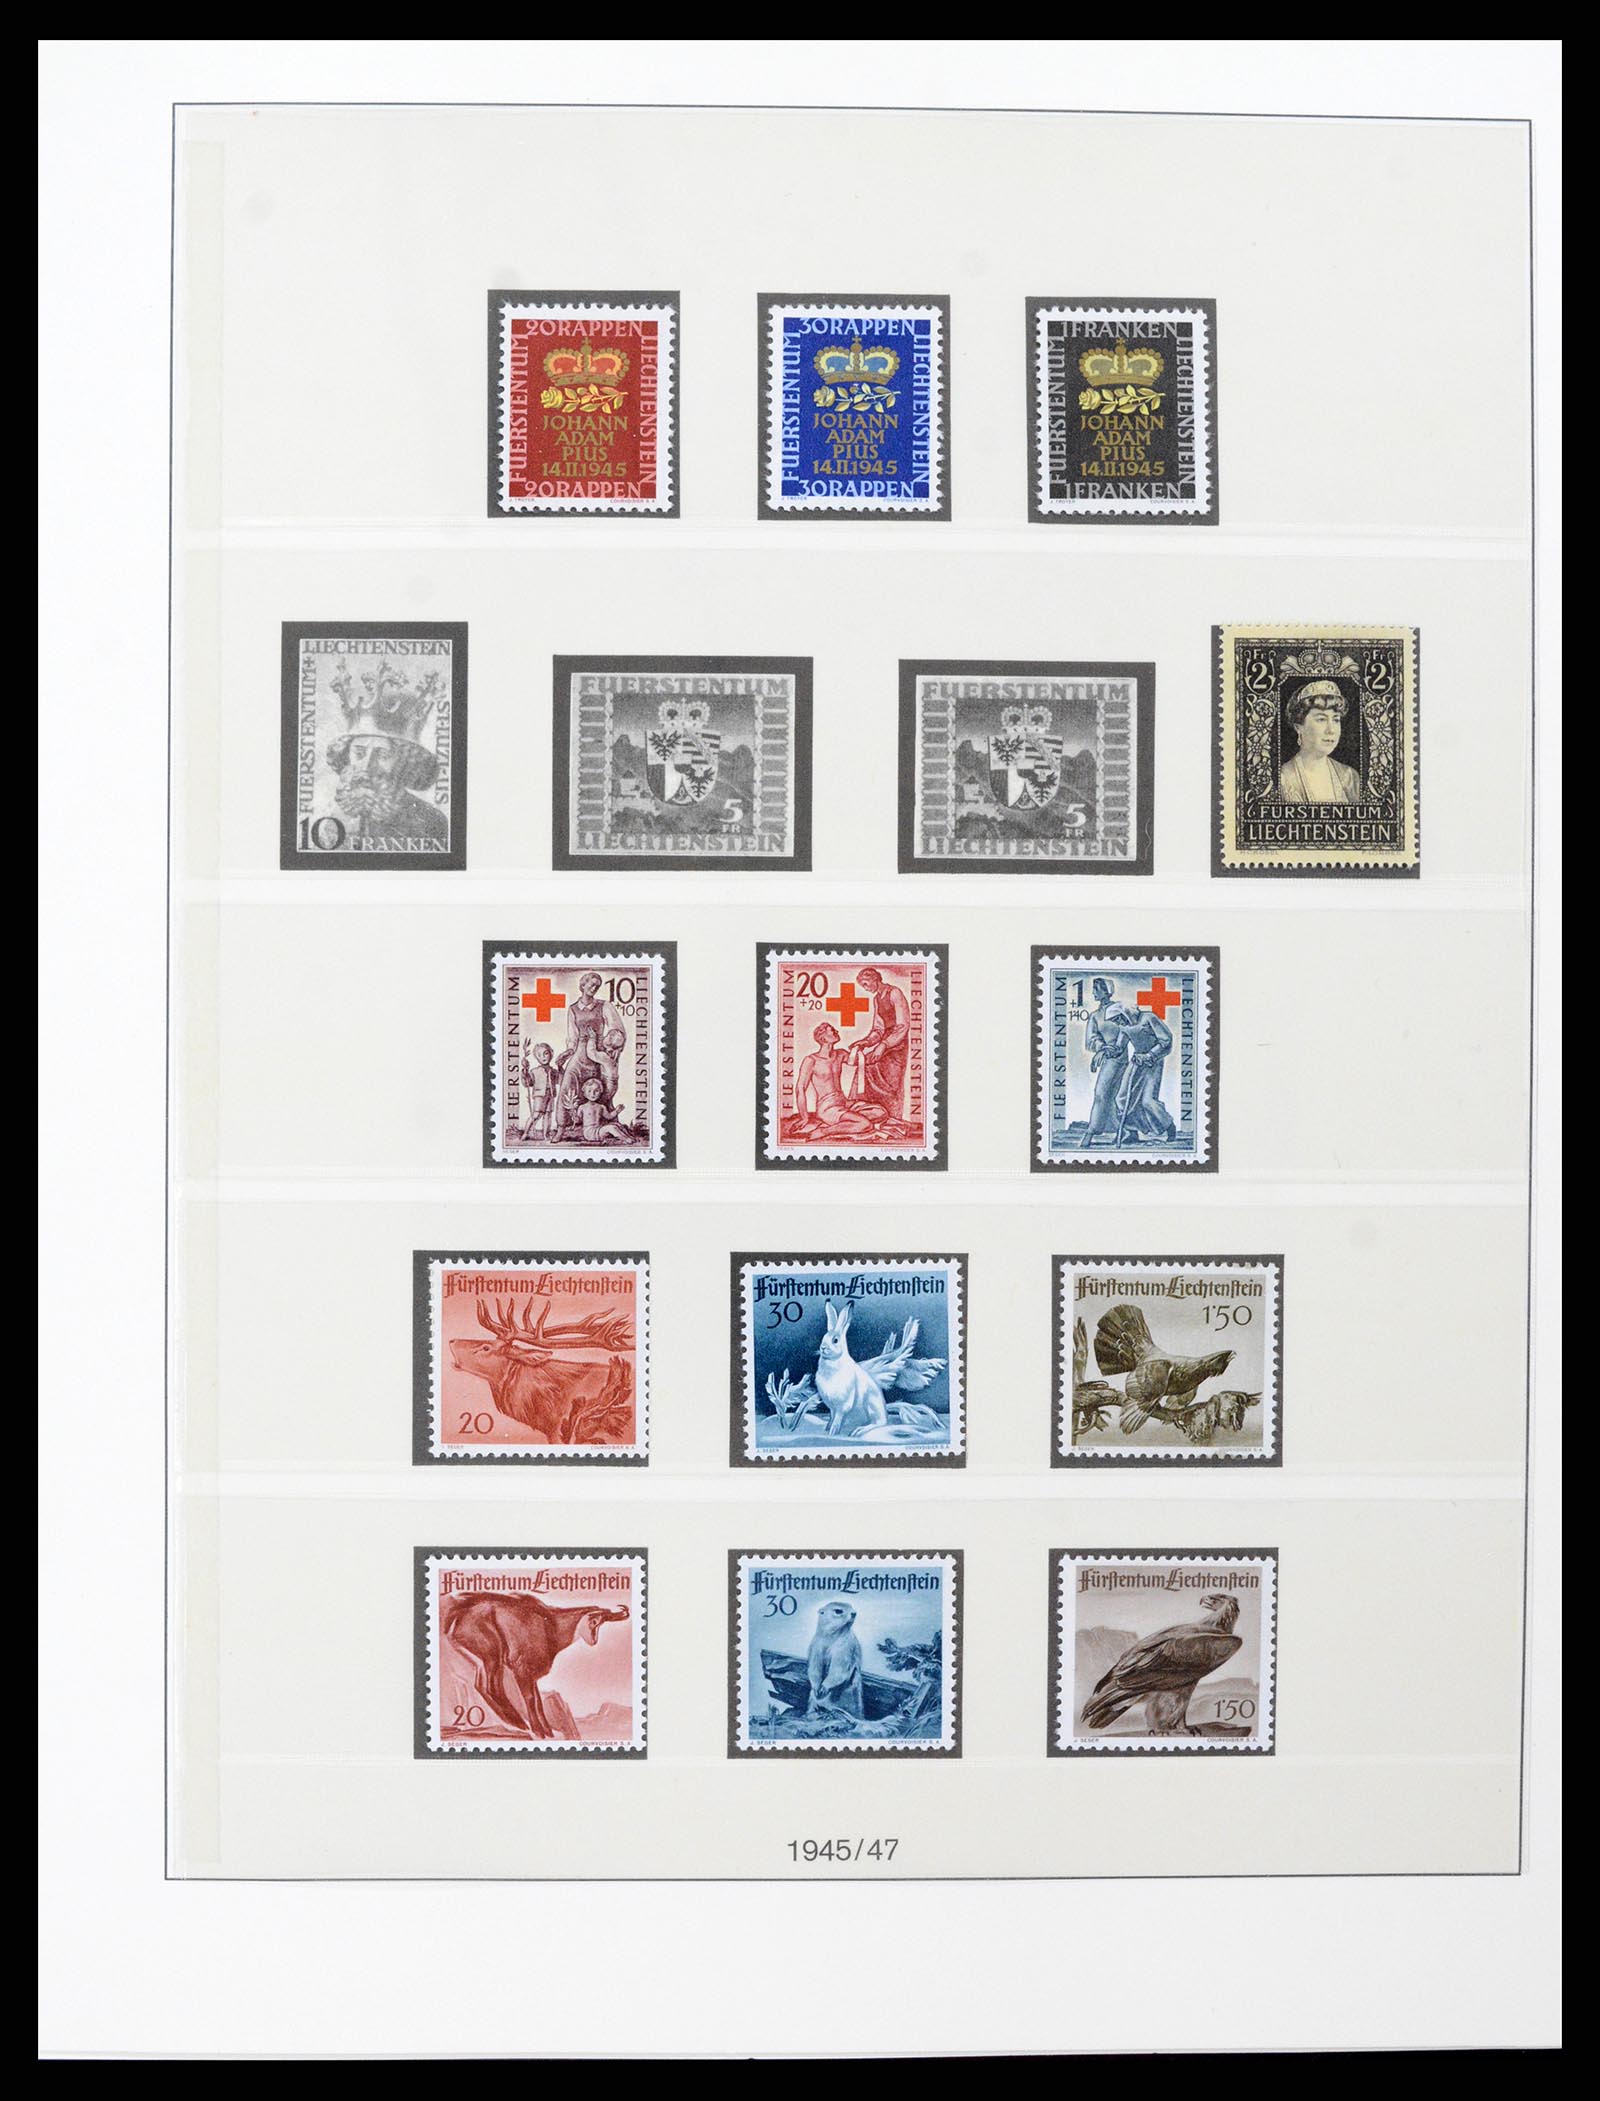 37293 023 - Stamp collection 37293 Liechtenstein 1912-2003.